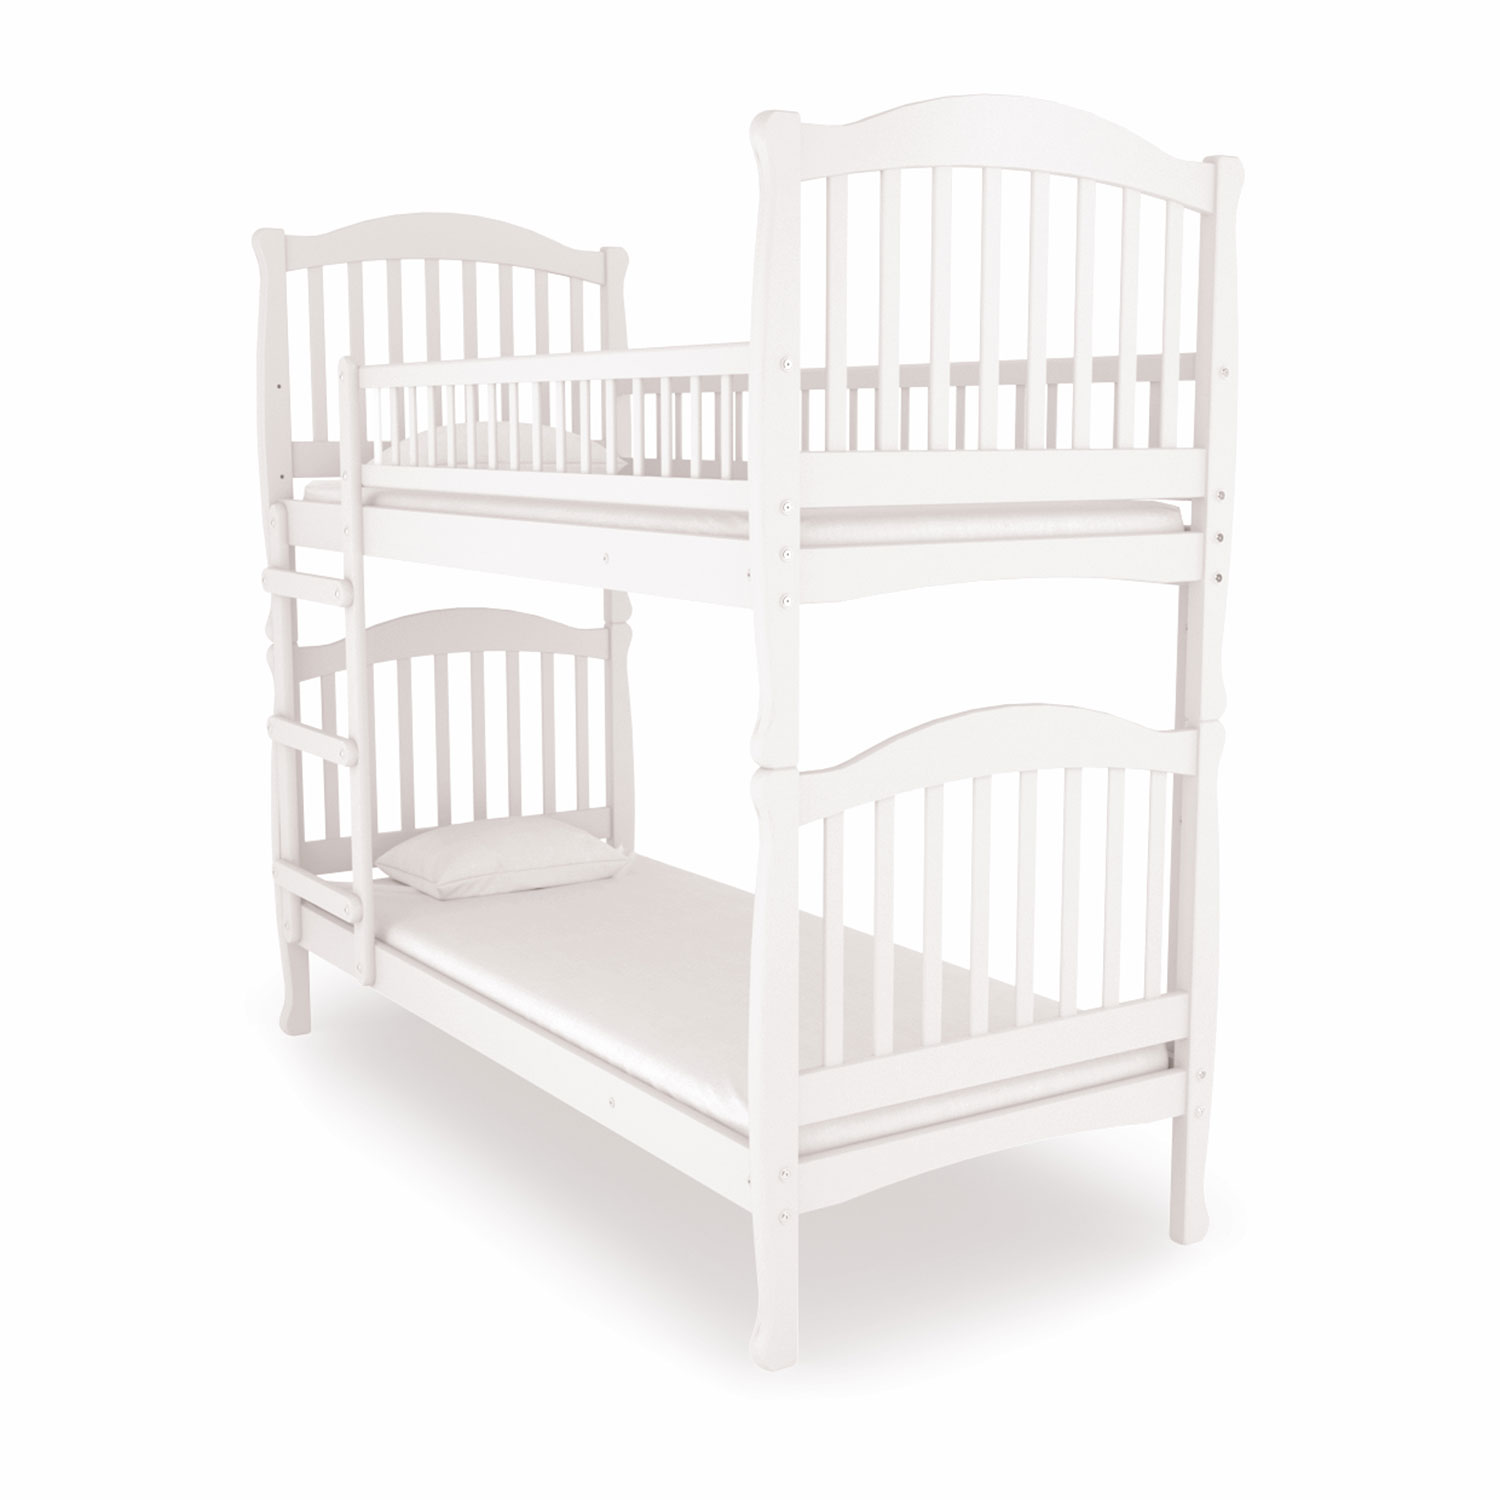 Двухъярусная кровать белого цвета для детской комнаты идеальное решение с лестницей комодом и белым каркасом